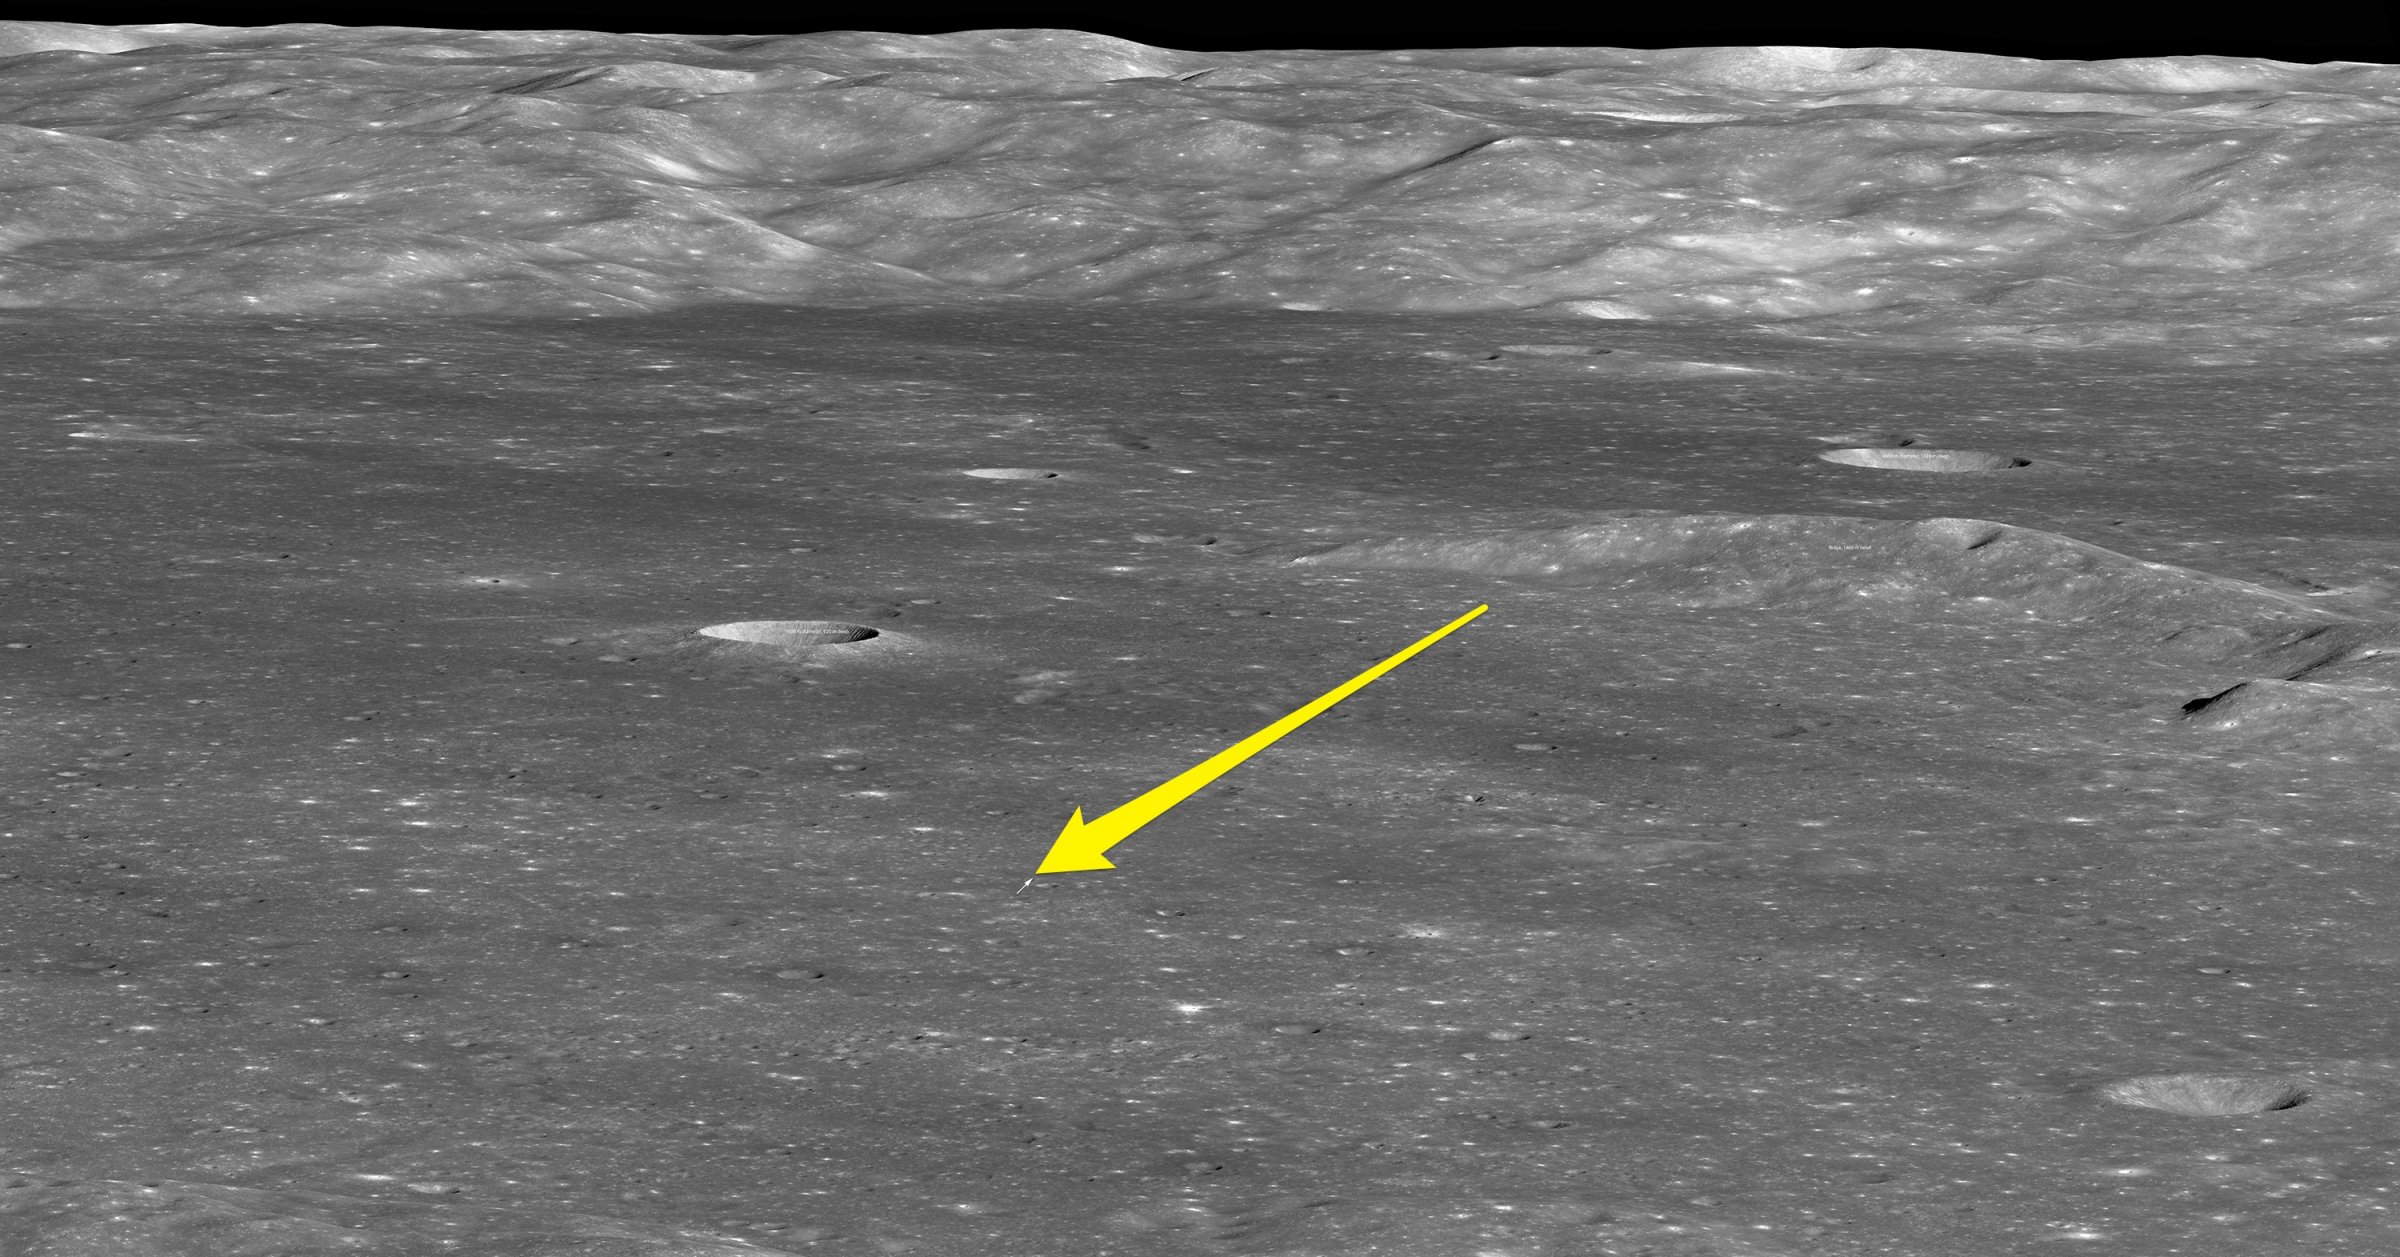 china-change-4-moon-mission-landing-site-satellite-image-lunar-reconnaissance-orbiter-lro-nasa-gsfc-asu-labeled.jpg